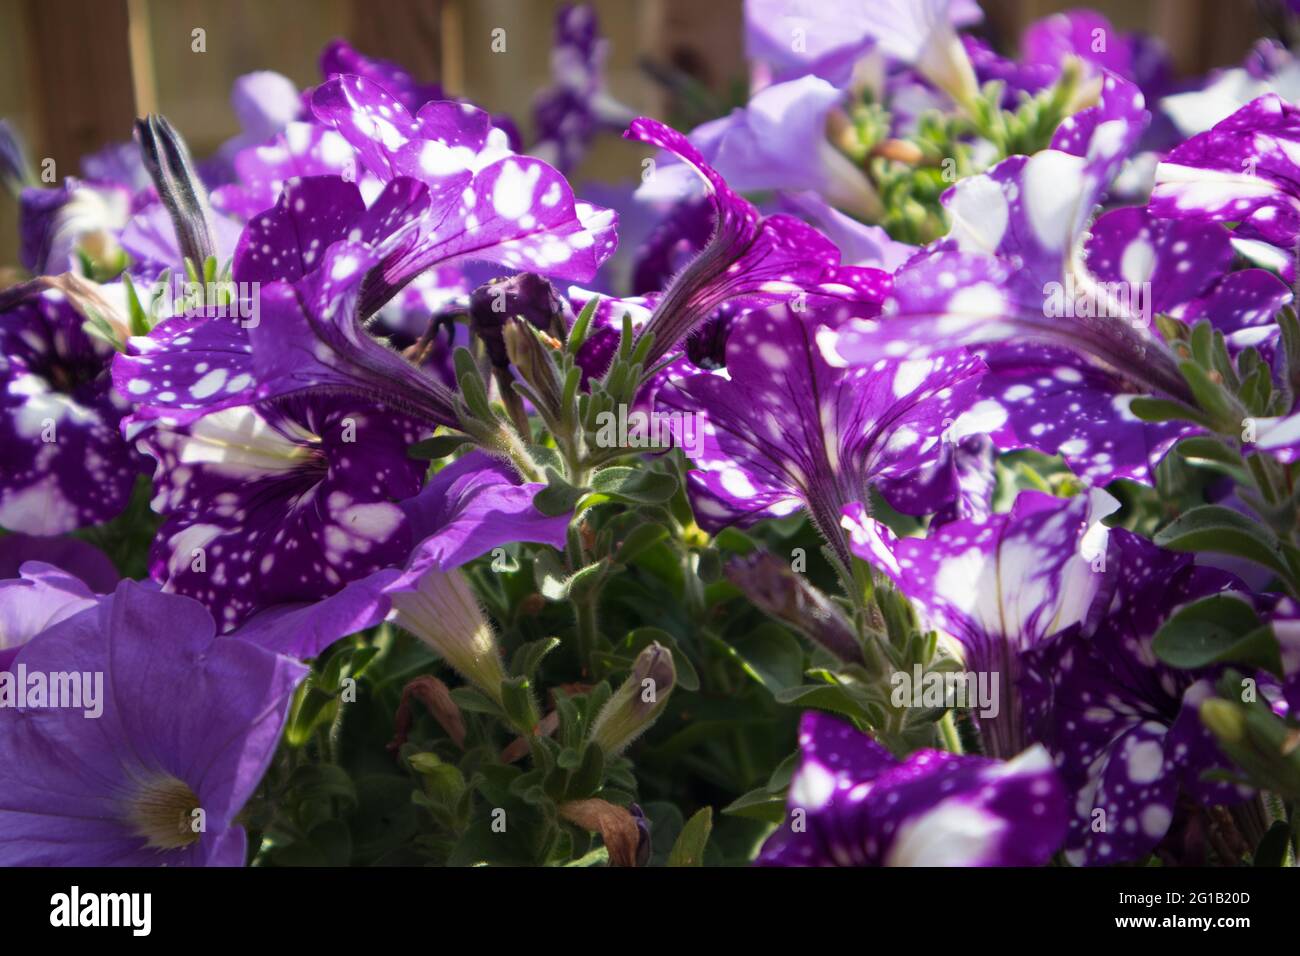 Spotted purple petunias. Stock Photo